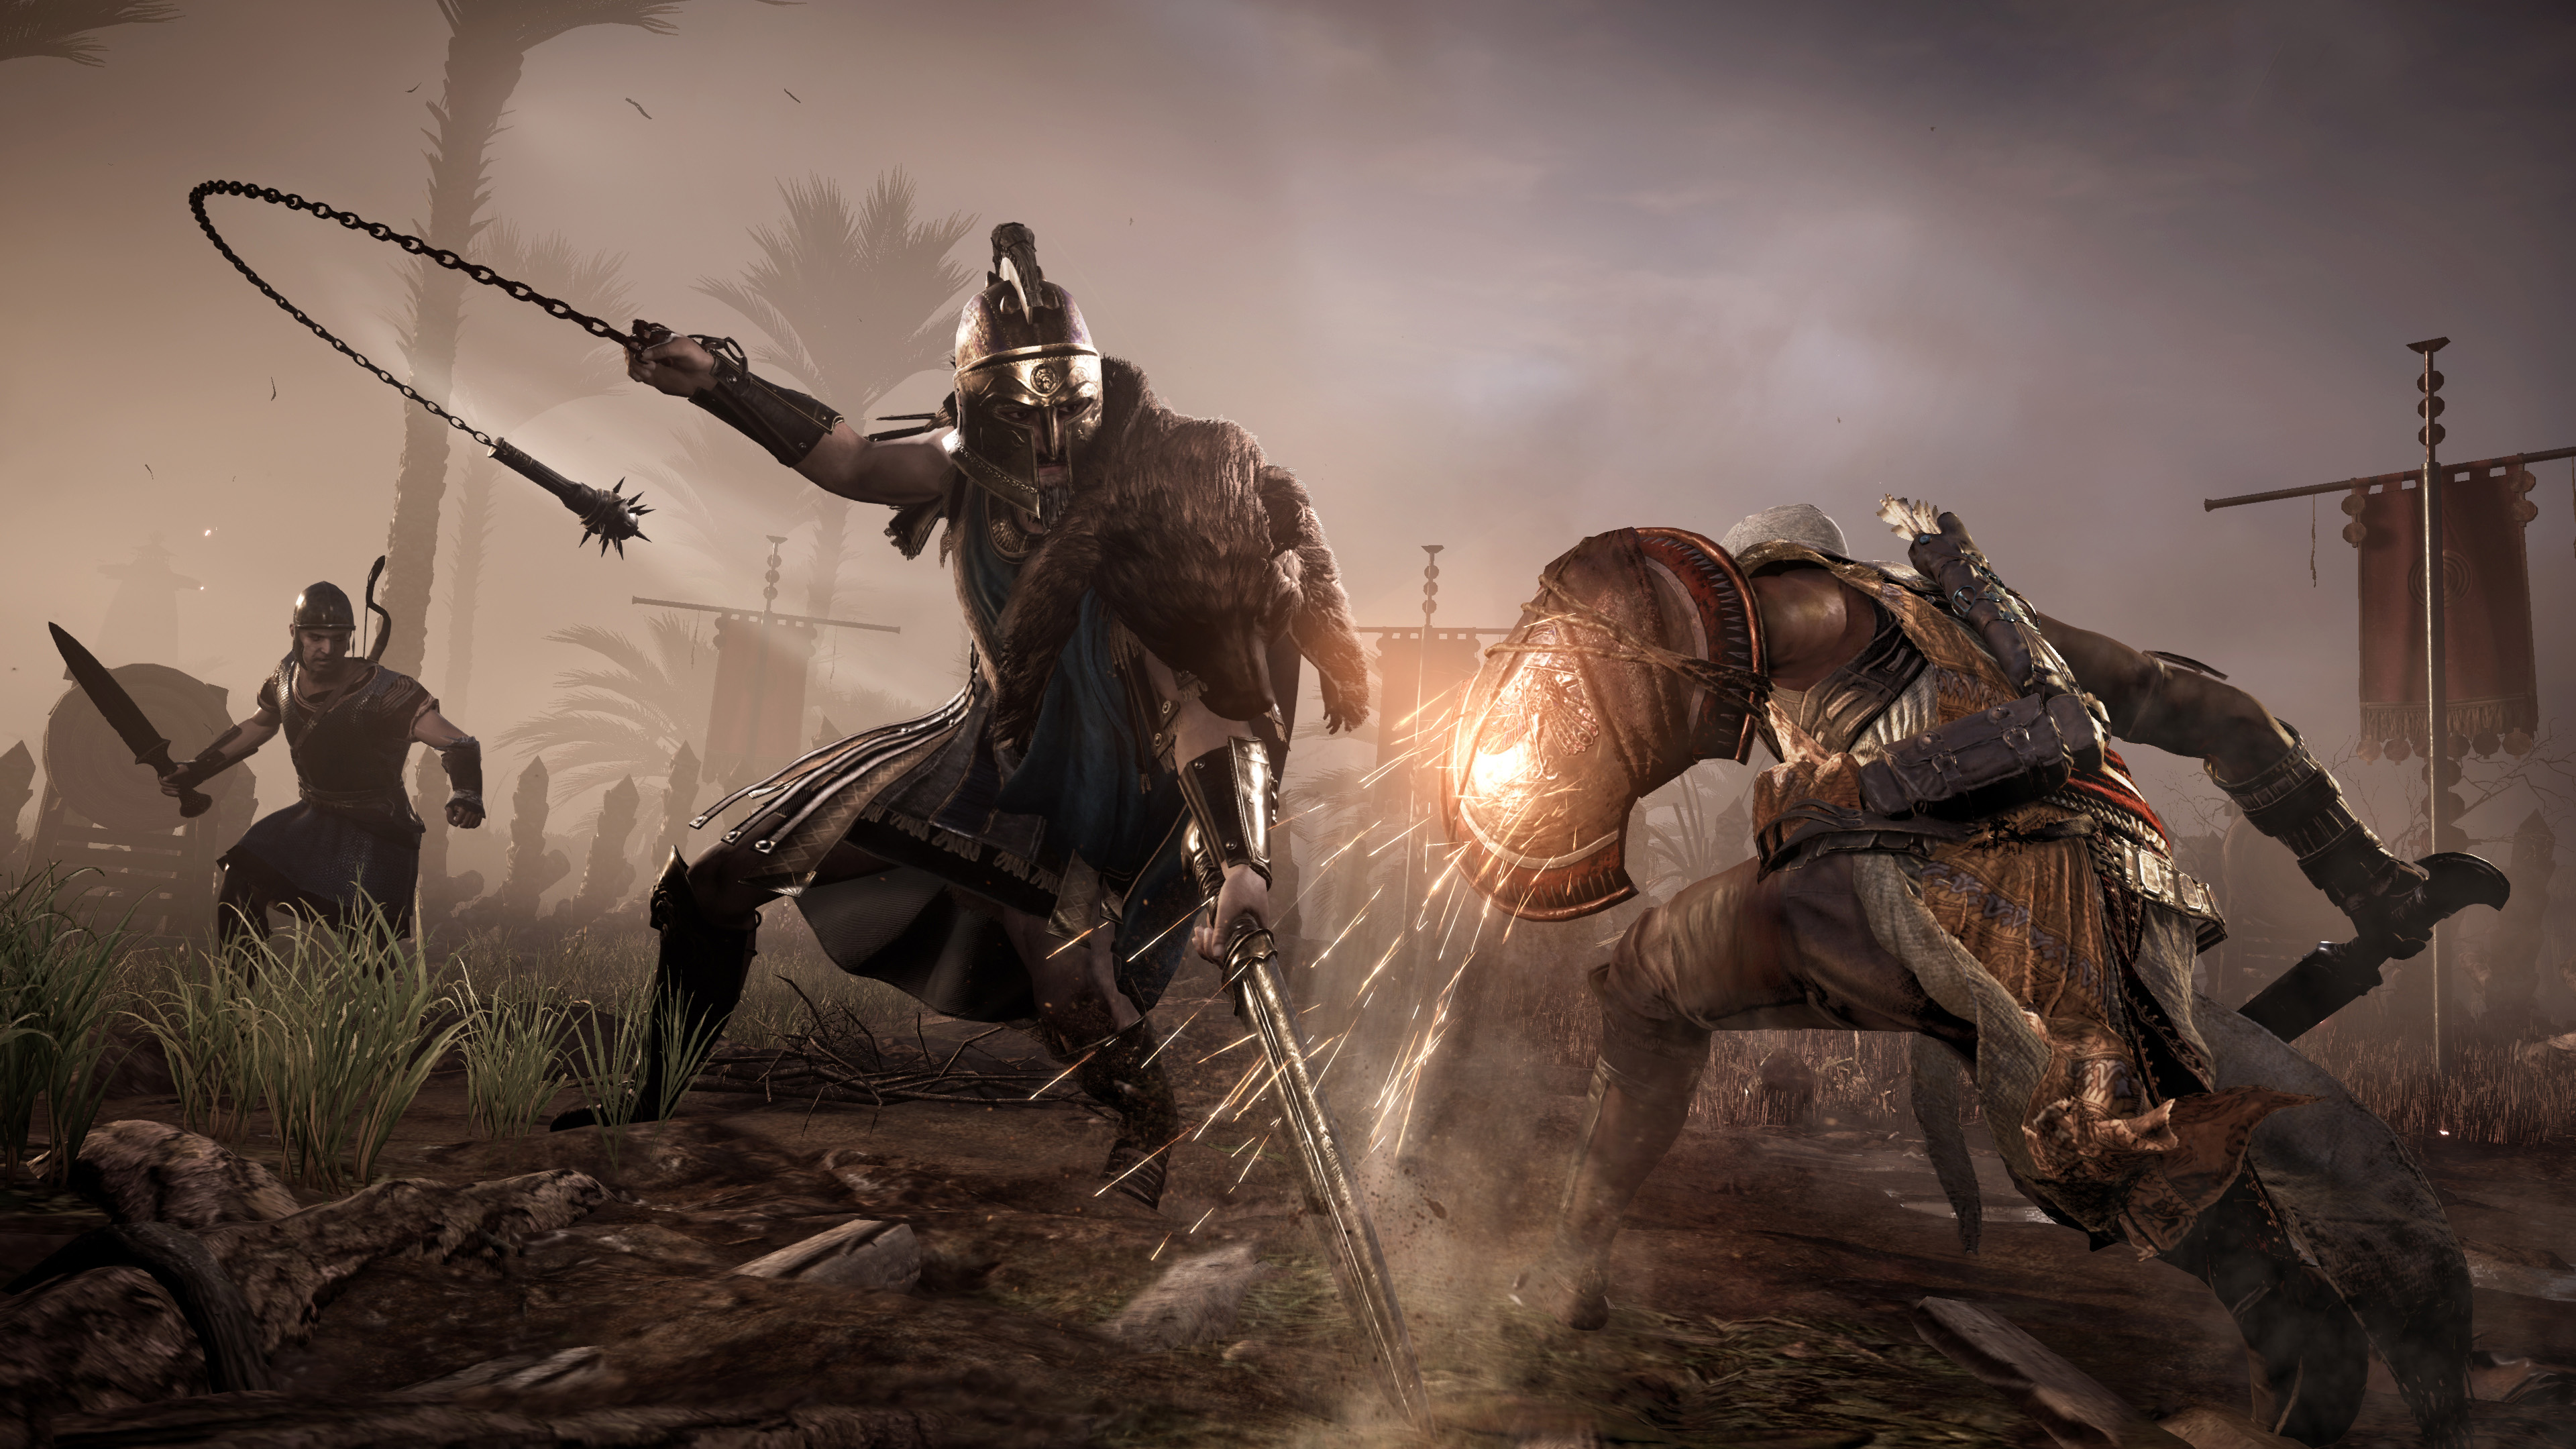 Immagine pubblicata in relazione al seguente contenuto: Ubisoft pubblica lo story trailer e screenshot in 4K di Assassin's Creed Origins | Nome immagine: news26902_Assassin-s-Creed-Origins-Screenshot_7.jpg